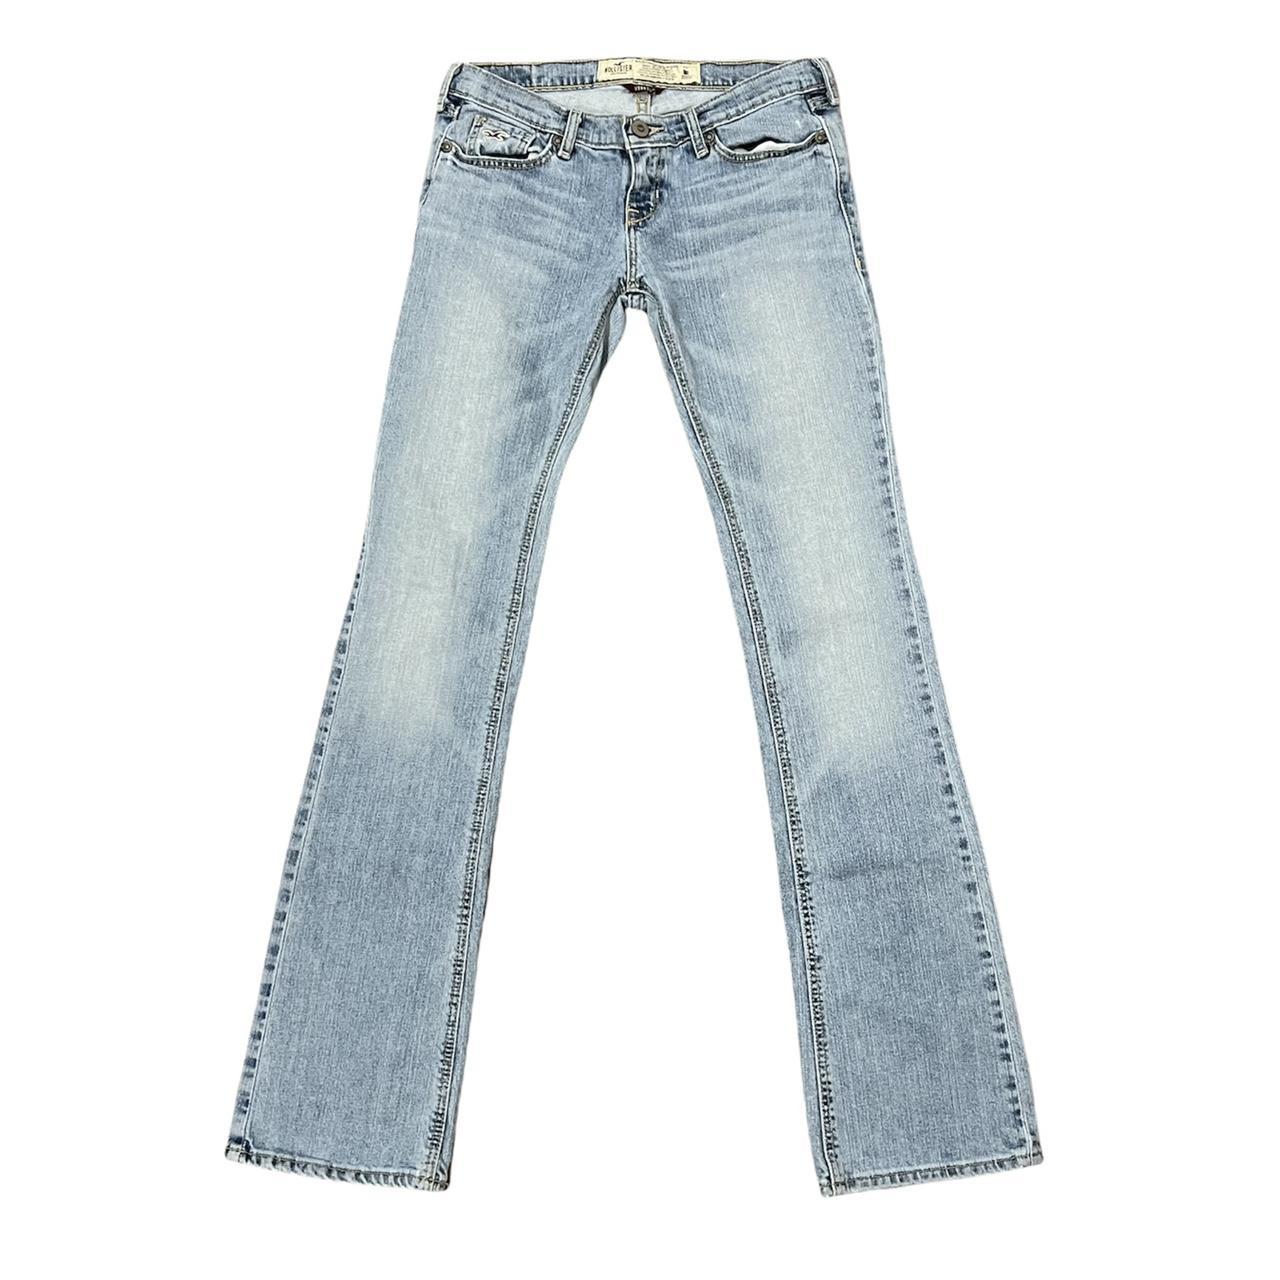 The Venice bootcut jeans super low rise... - Depop